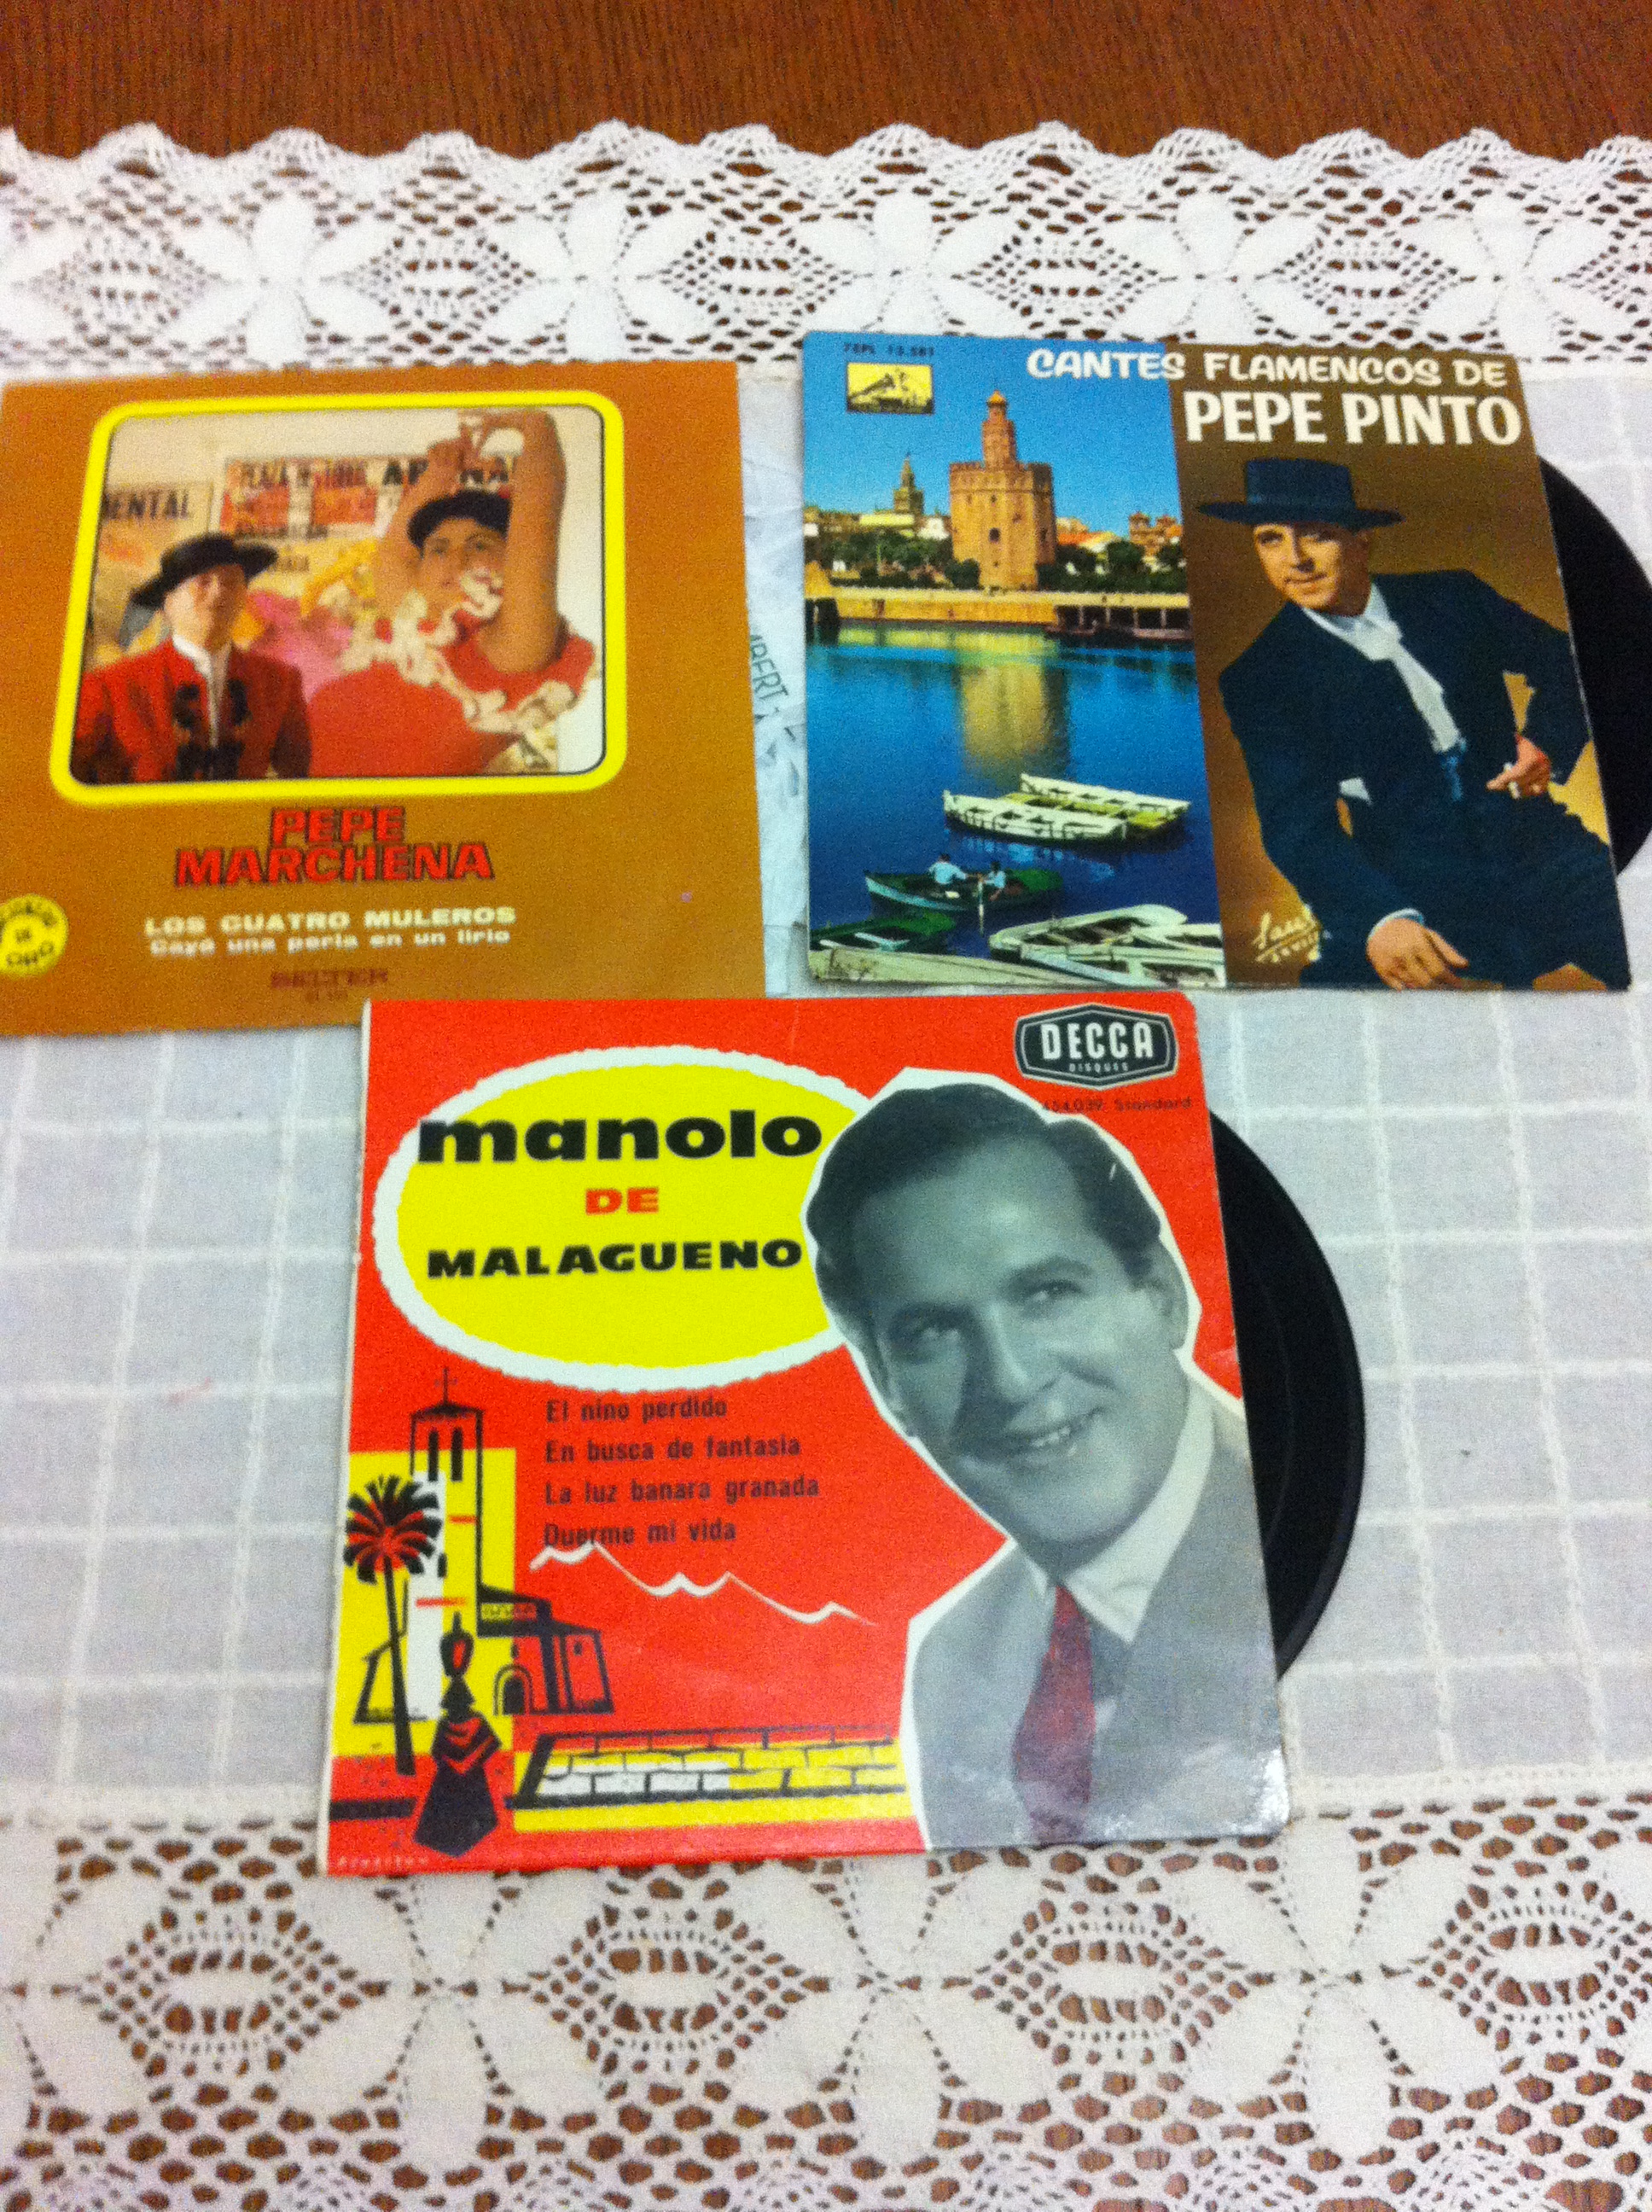 Flamenco cassette et disque vinyle   - Page 3 14022310121614950712010107